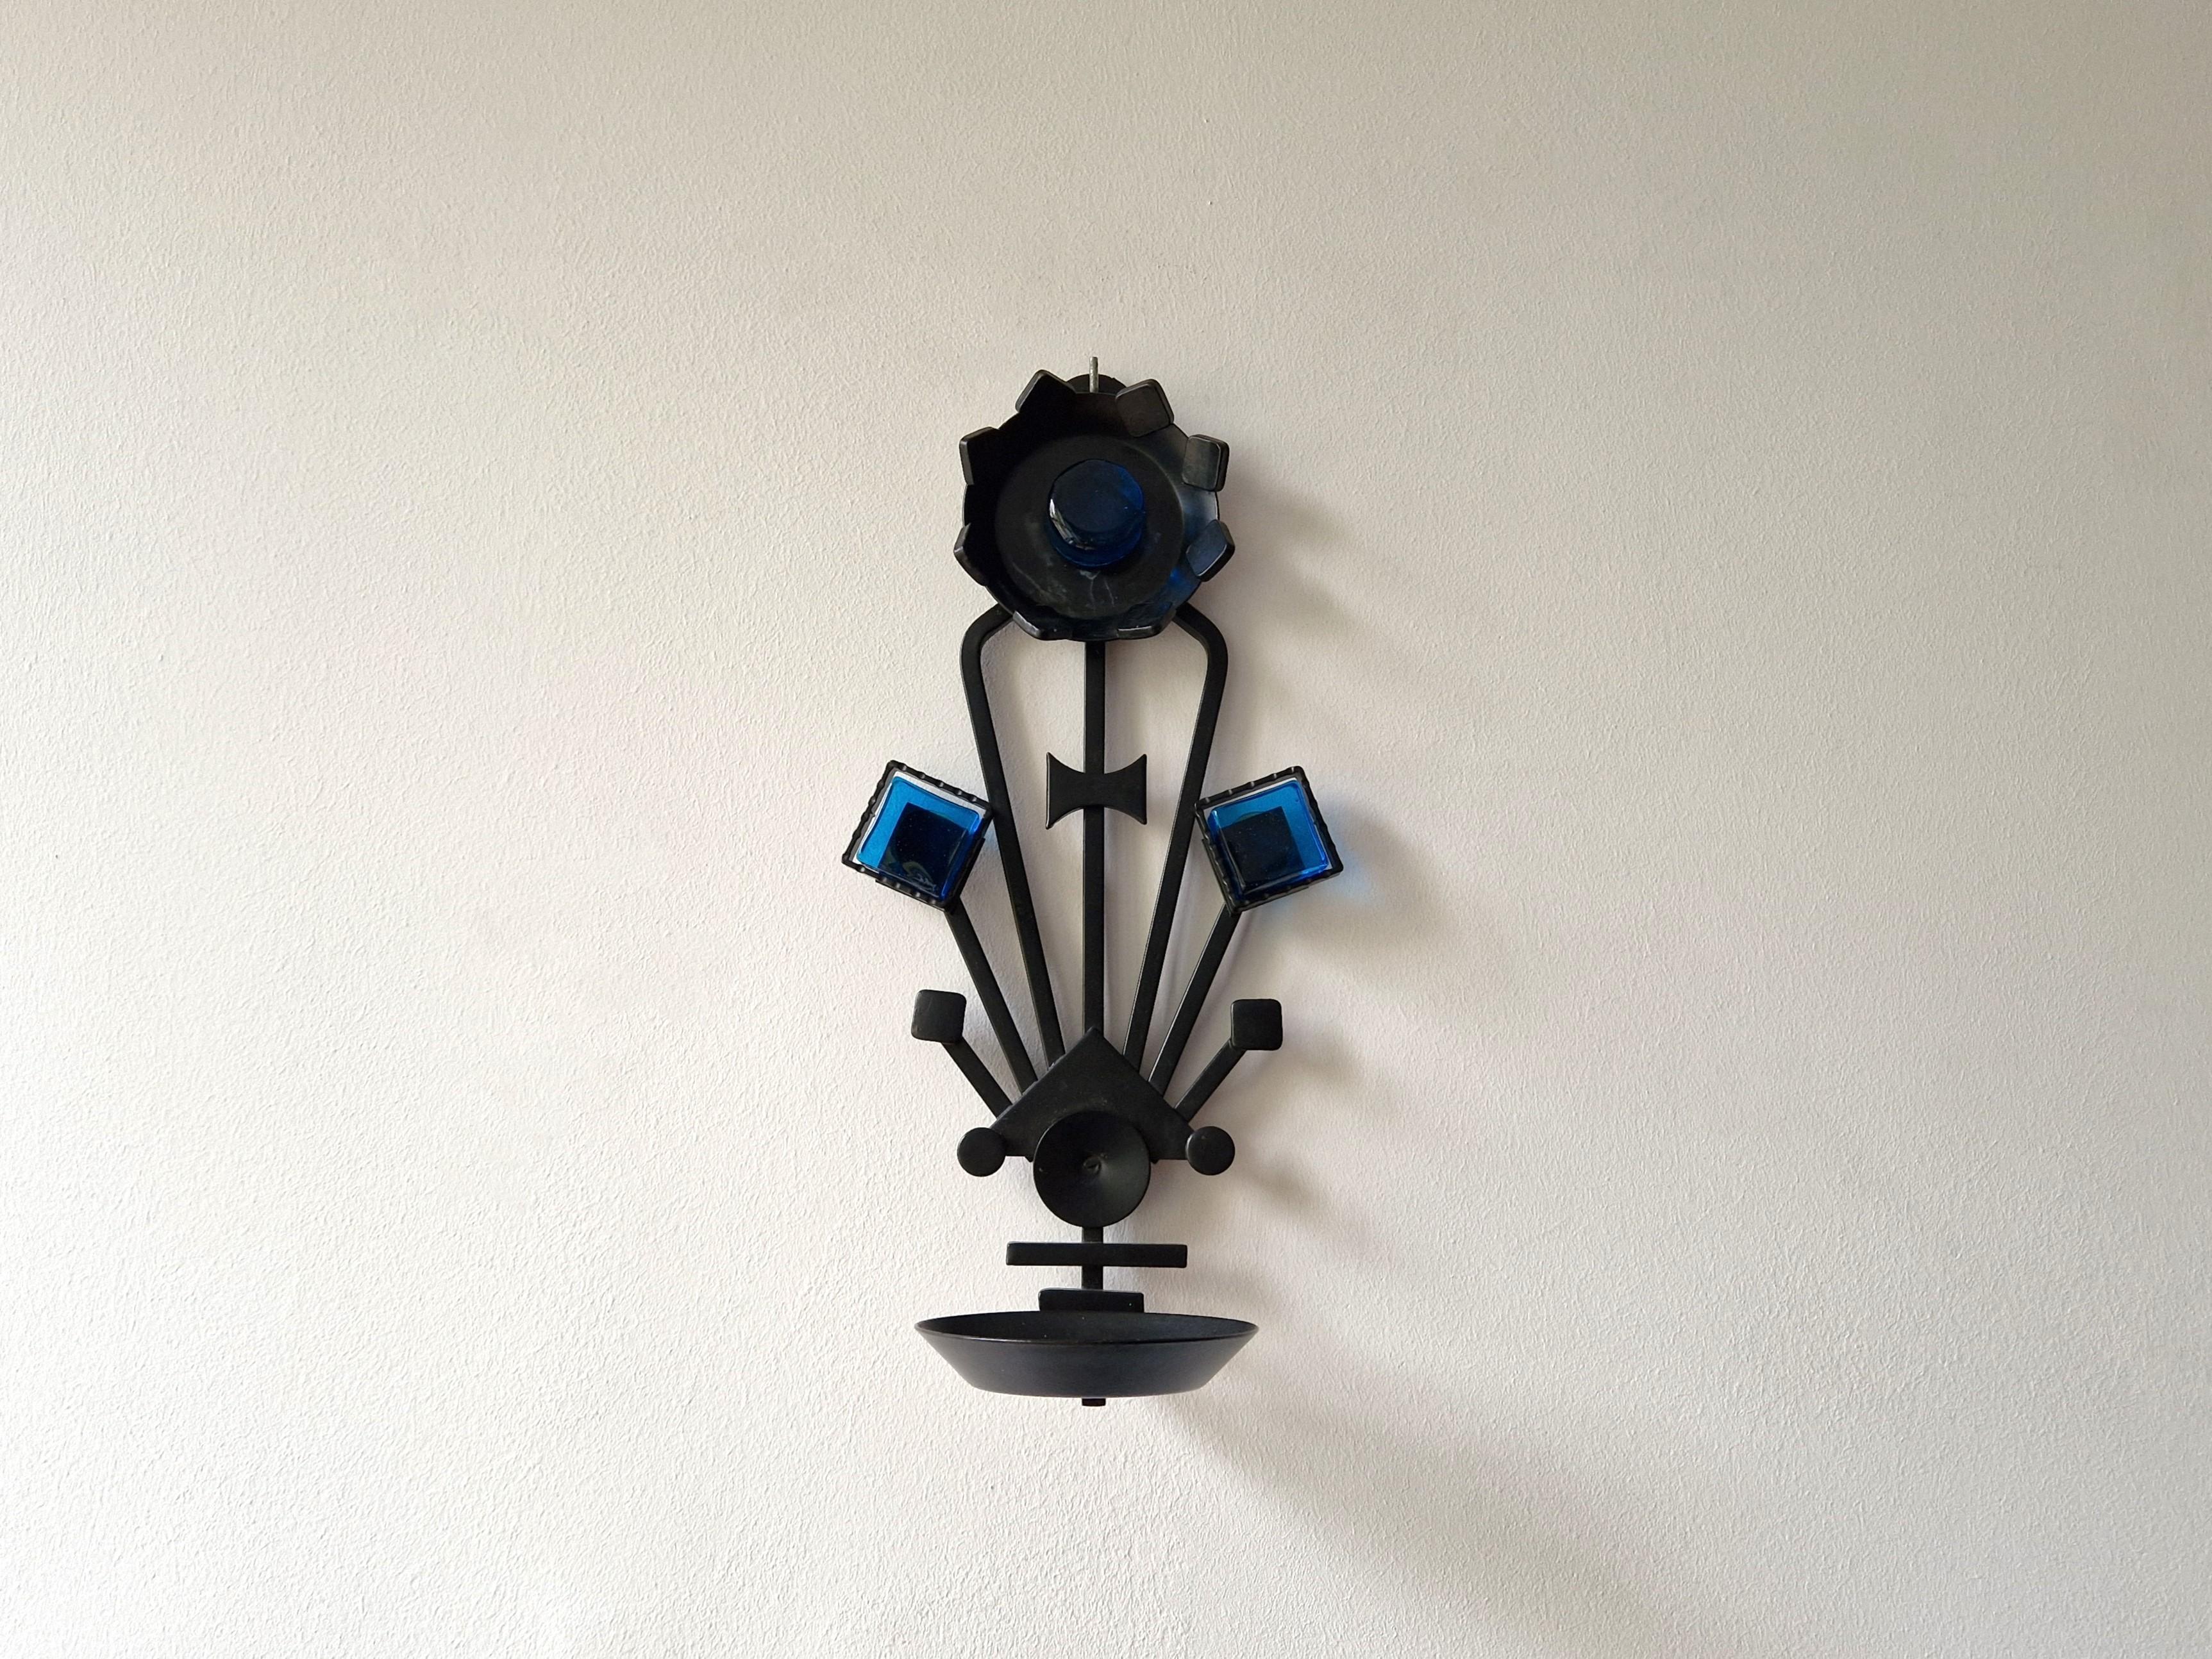 Dieser Kerzenleuchter aus Eisen und Glas wurde von Dantoft Kunstartikler (Kunststücke) in Dänemark hergestellt. Ein atemberaubendes Wandkunstwerk im dänischen Design. Er ist aus lackiertem Schmiedeeisen mit schönen blauen Glasstücken gefertigt. Er